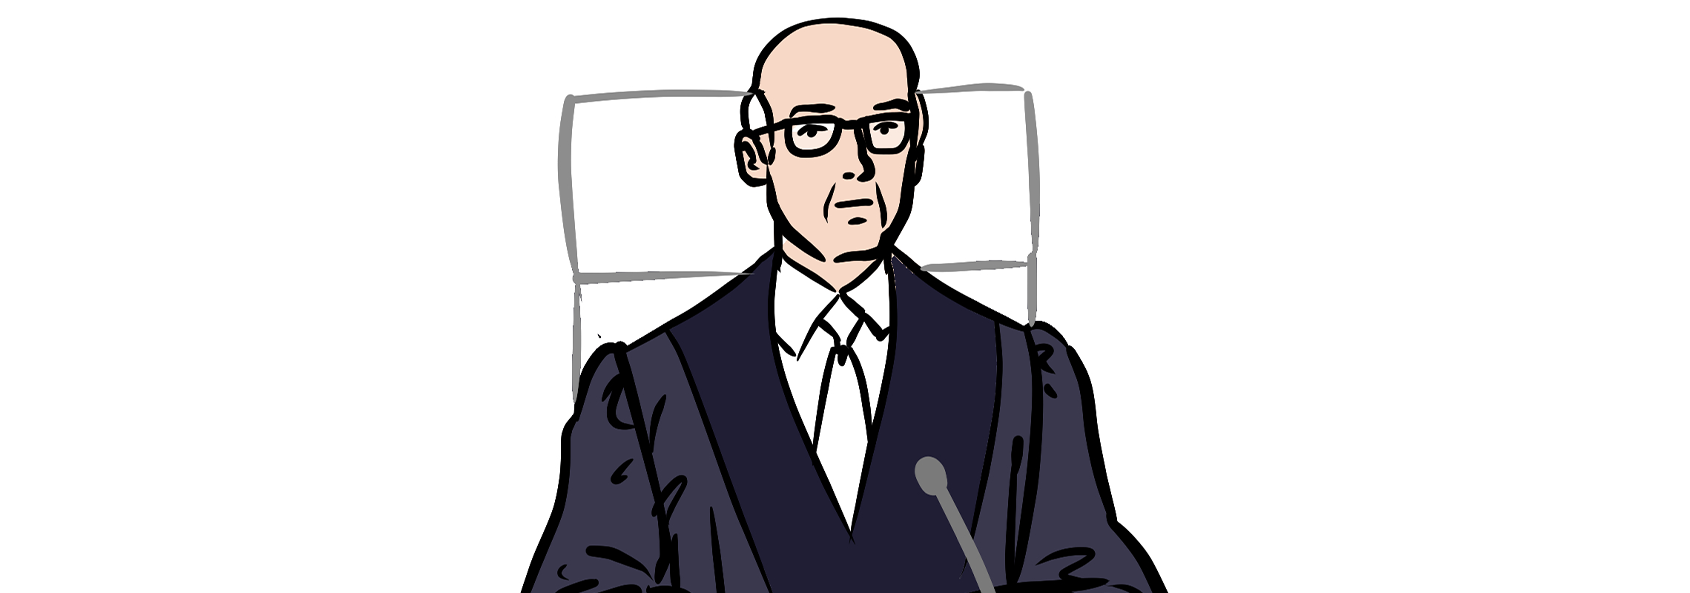 Illustration: Ein Richter in Robe auf dem Richterstuhl. Er ist um die 60 Jahre alt, hat weißes Haar und eine Halbglatze. Er trägt eine Brille